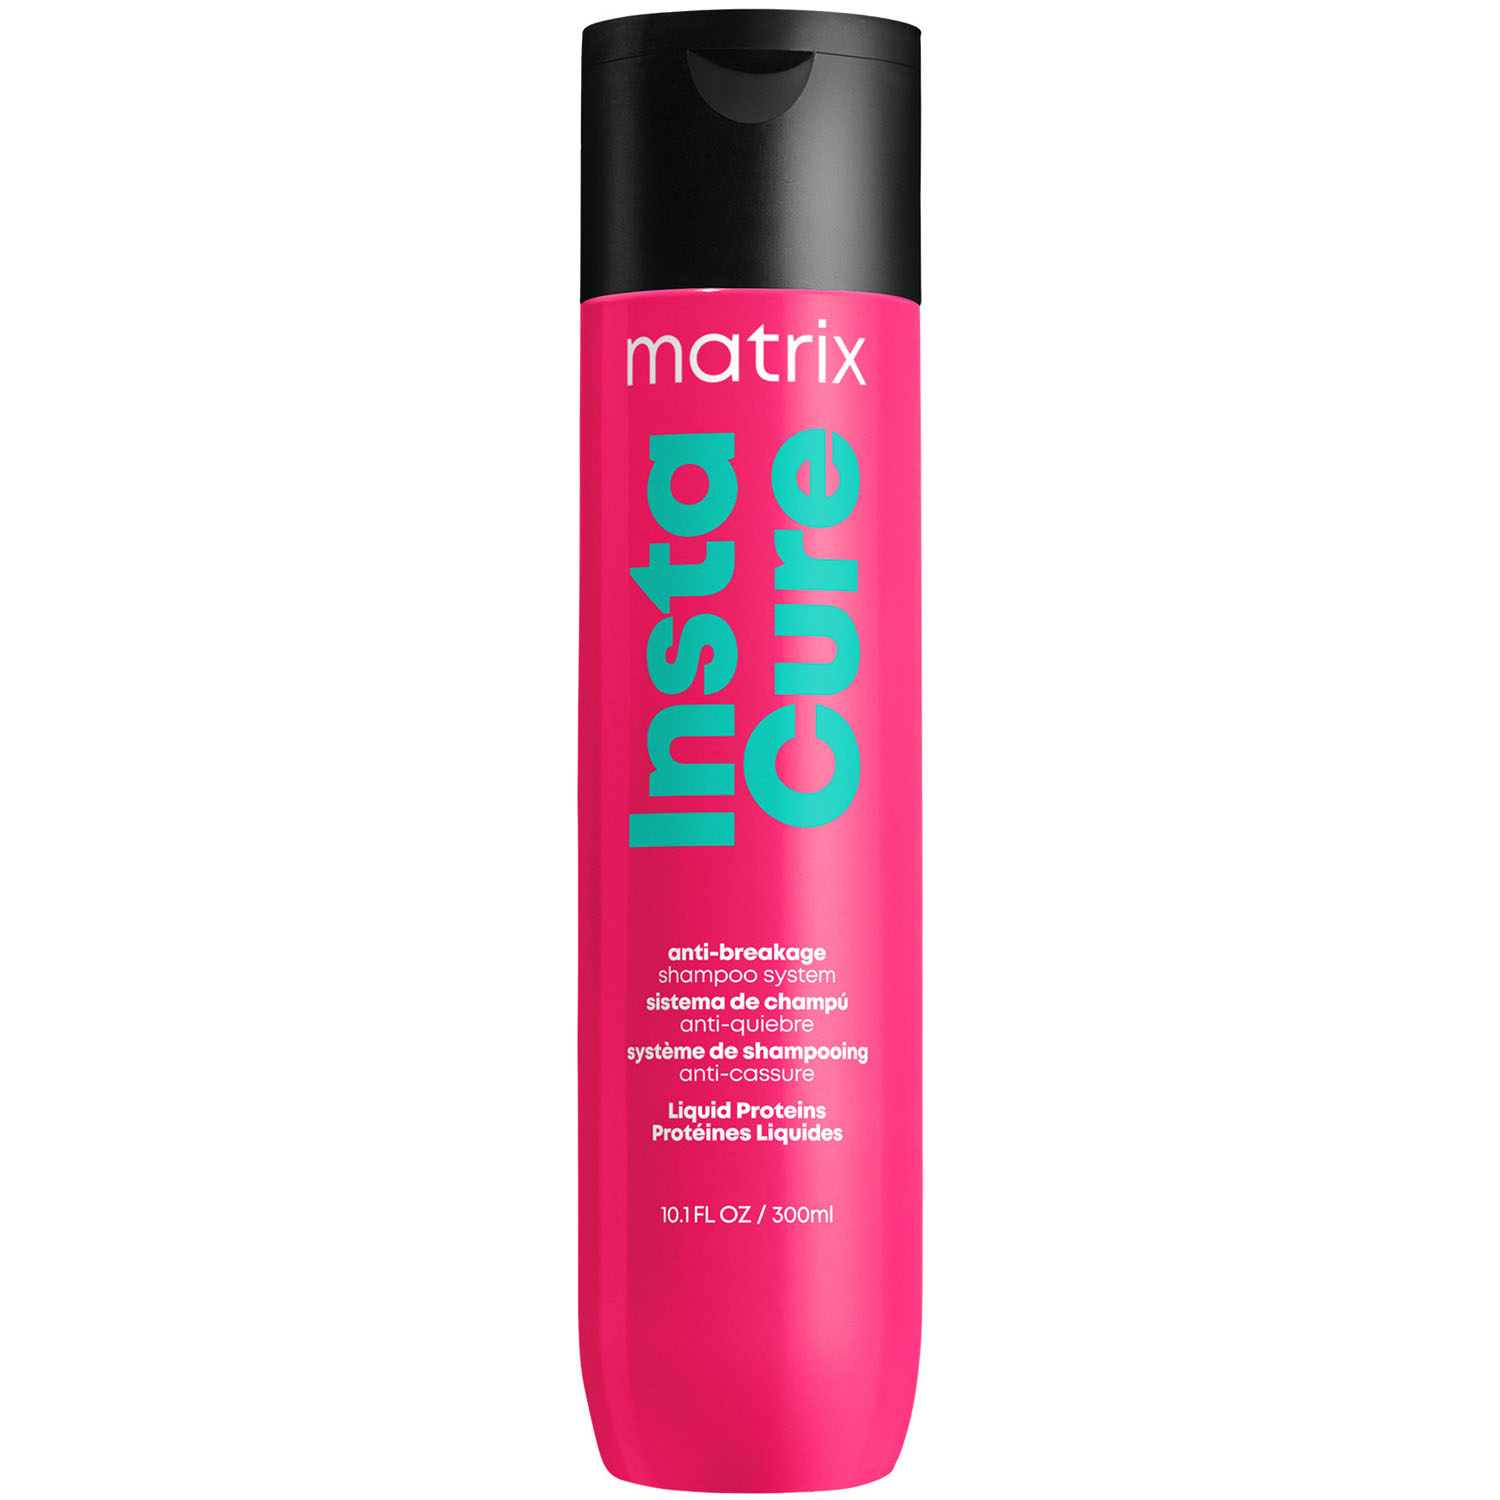 шампунь для восстановления волос с жидким протеином total results insta cure shampoo шампунь 300мл Matrix Профессиональный шампунь для восстановления волос с жидким протеином, 300 мл (Matrix, Total Results)